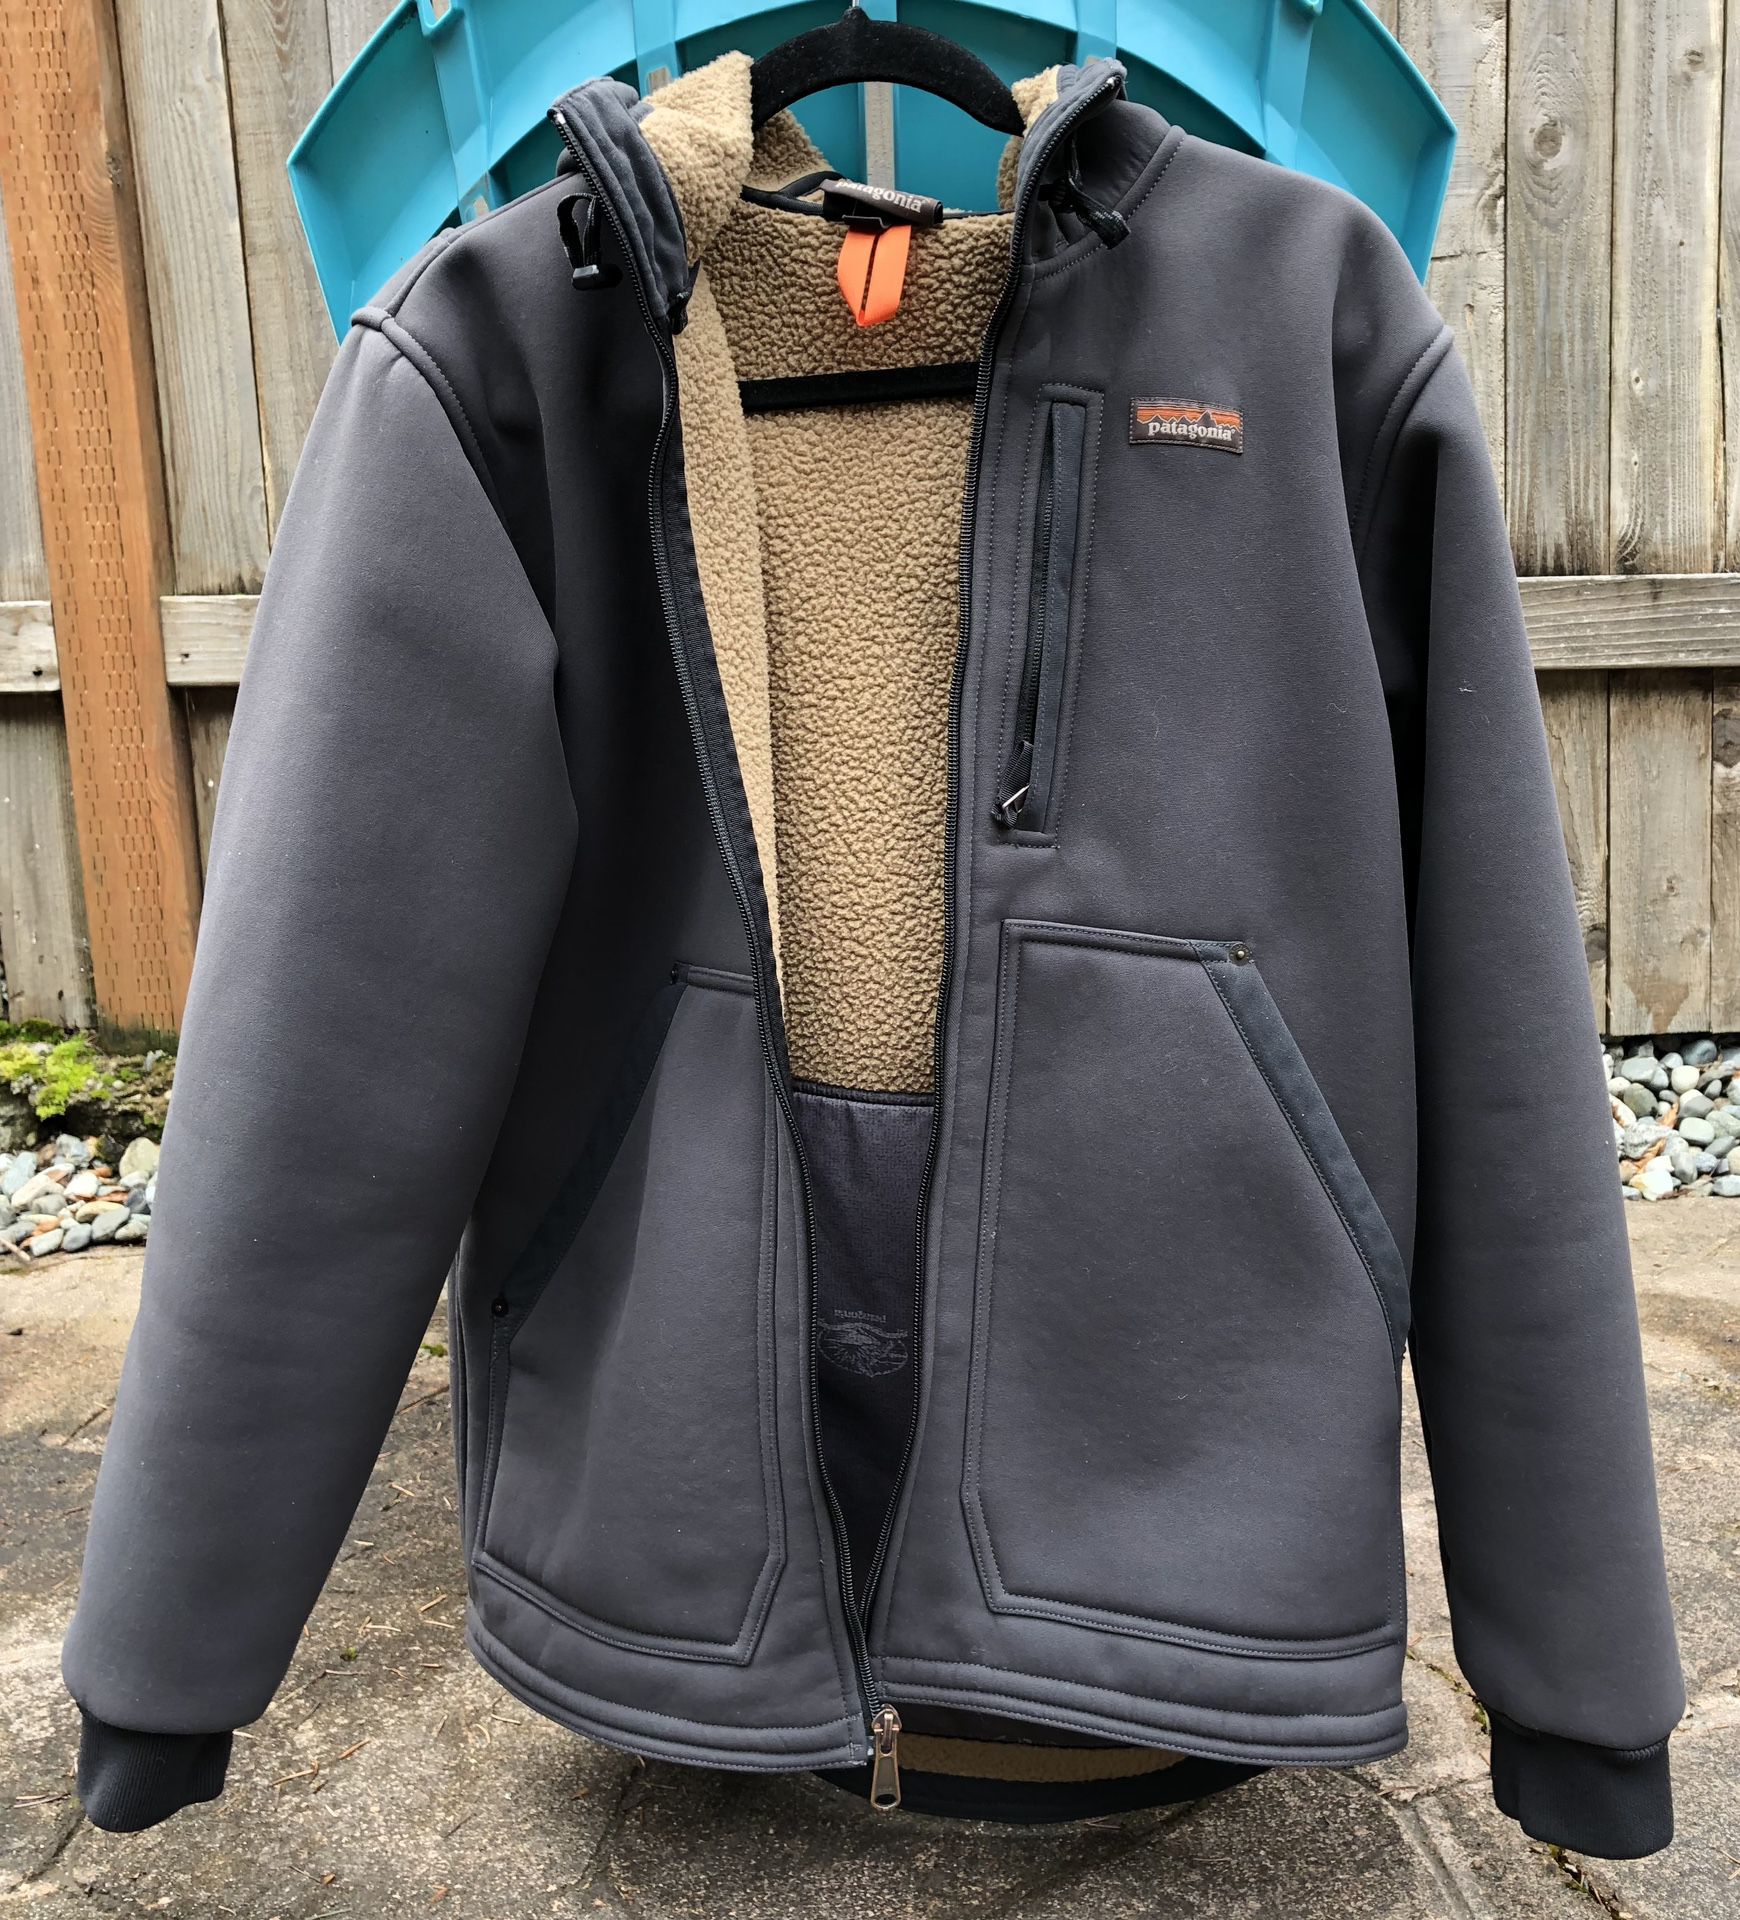 Patagonia Burly Man hooded jacket 